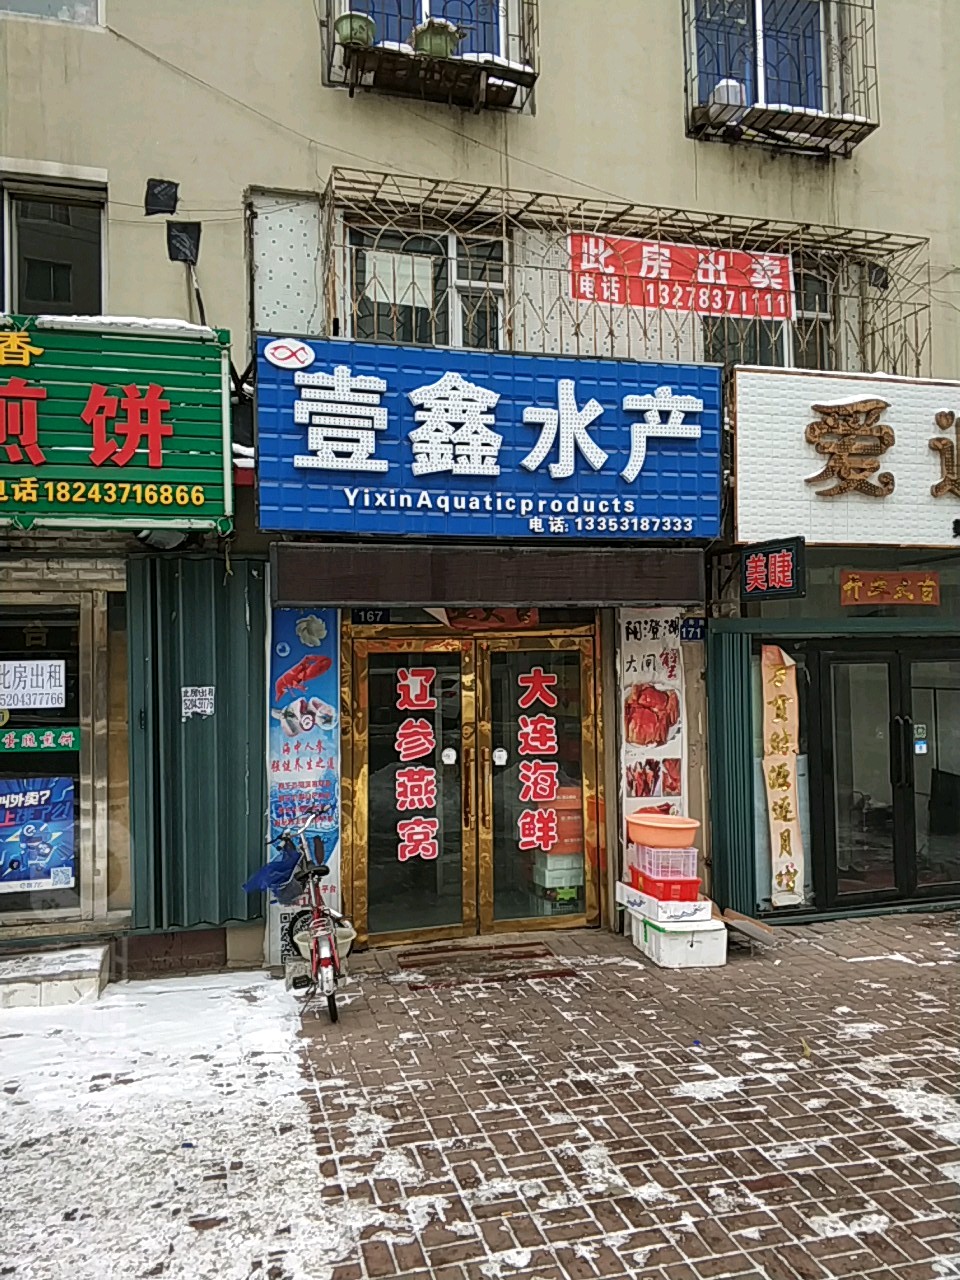 壹鑫水产(康寿路店)